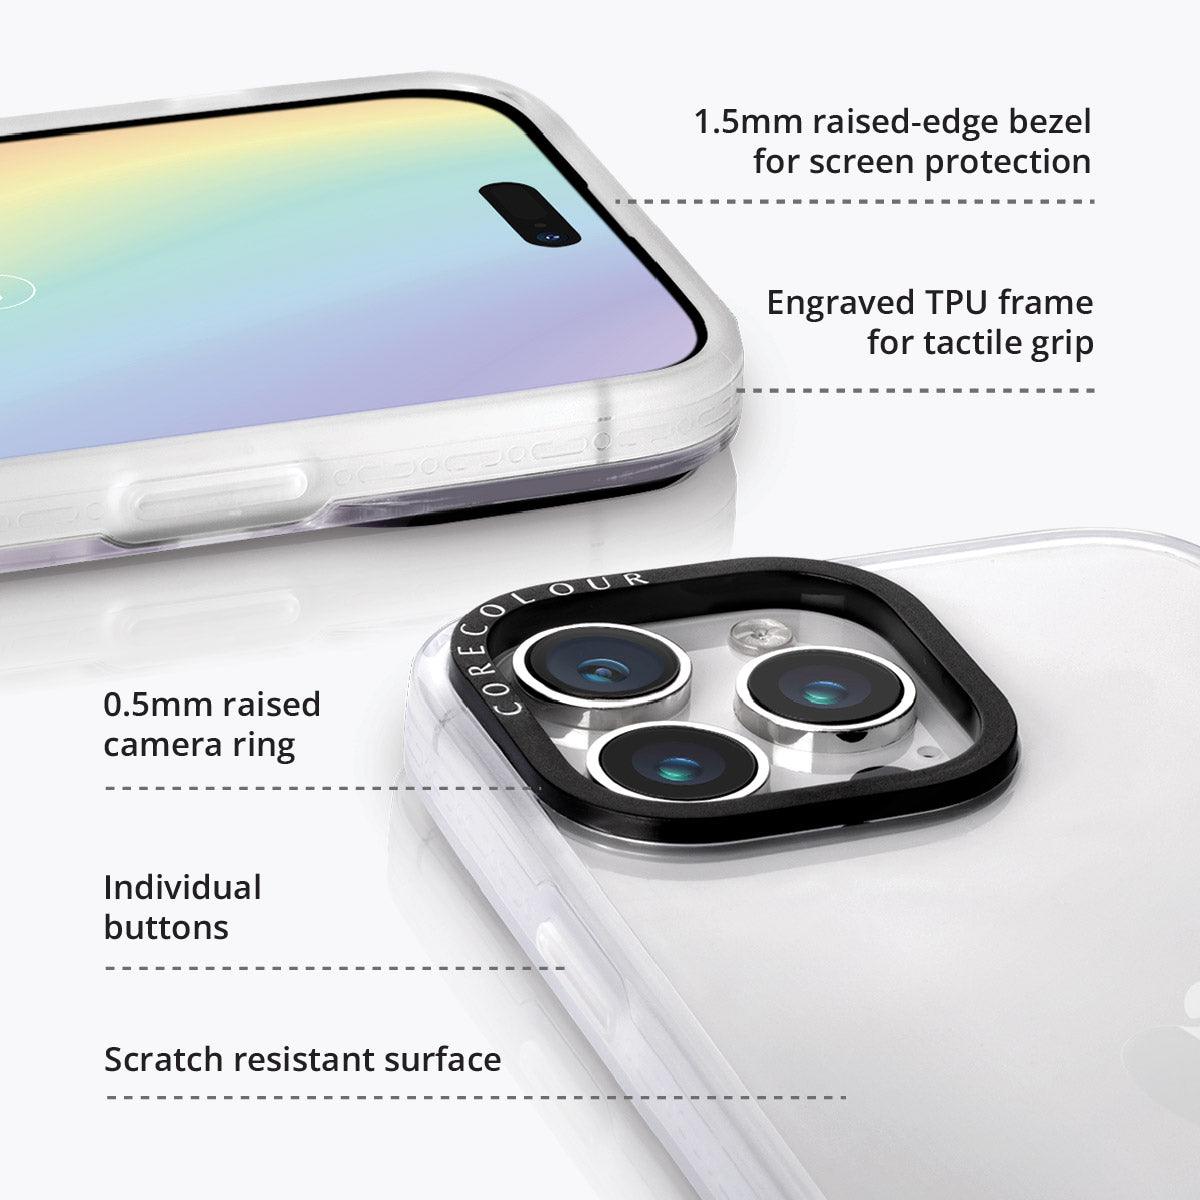 iPhone 14 Pro White Flower Minimal Line Phone Case MagSafe Compatible - CORECOLOUR AU